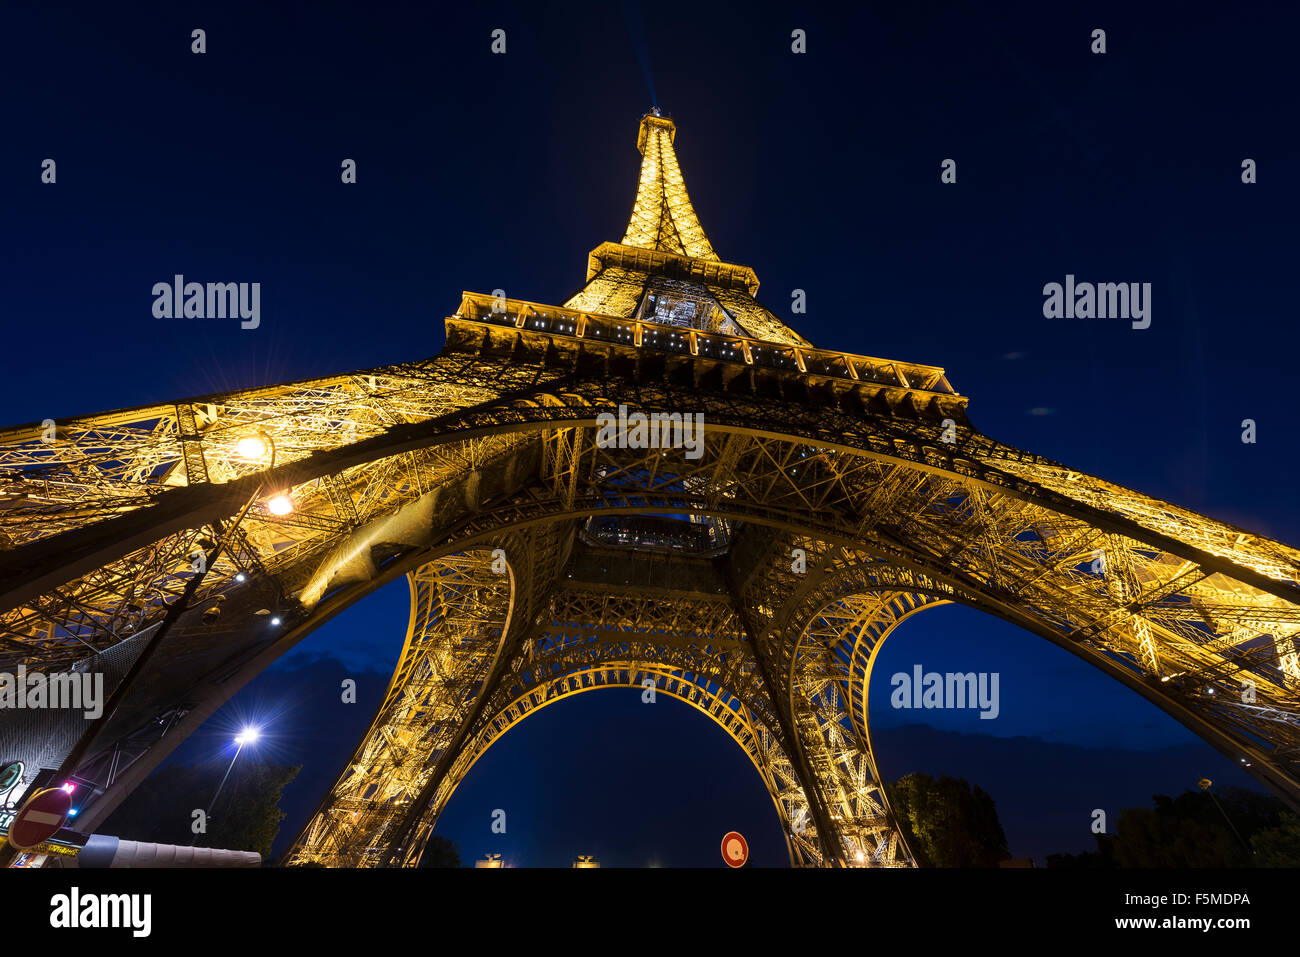 La Tour Eiffel illuminée la nuit, tour Eiffel, Champ de Mars, Paris, Ile-de-France, France Banque D'Images